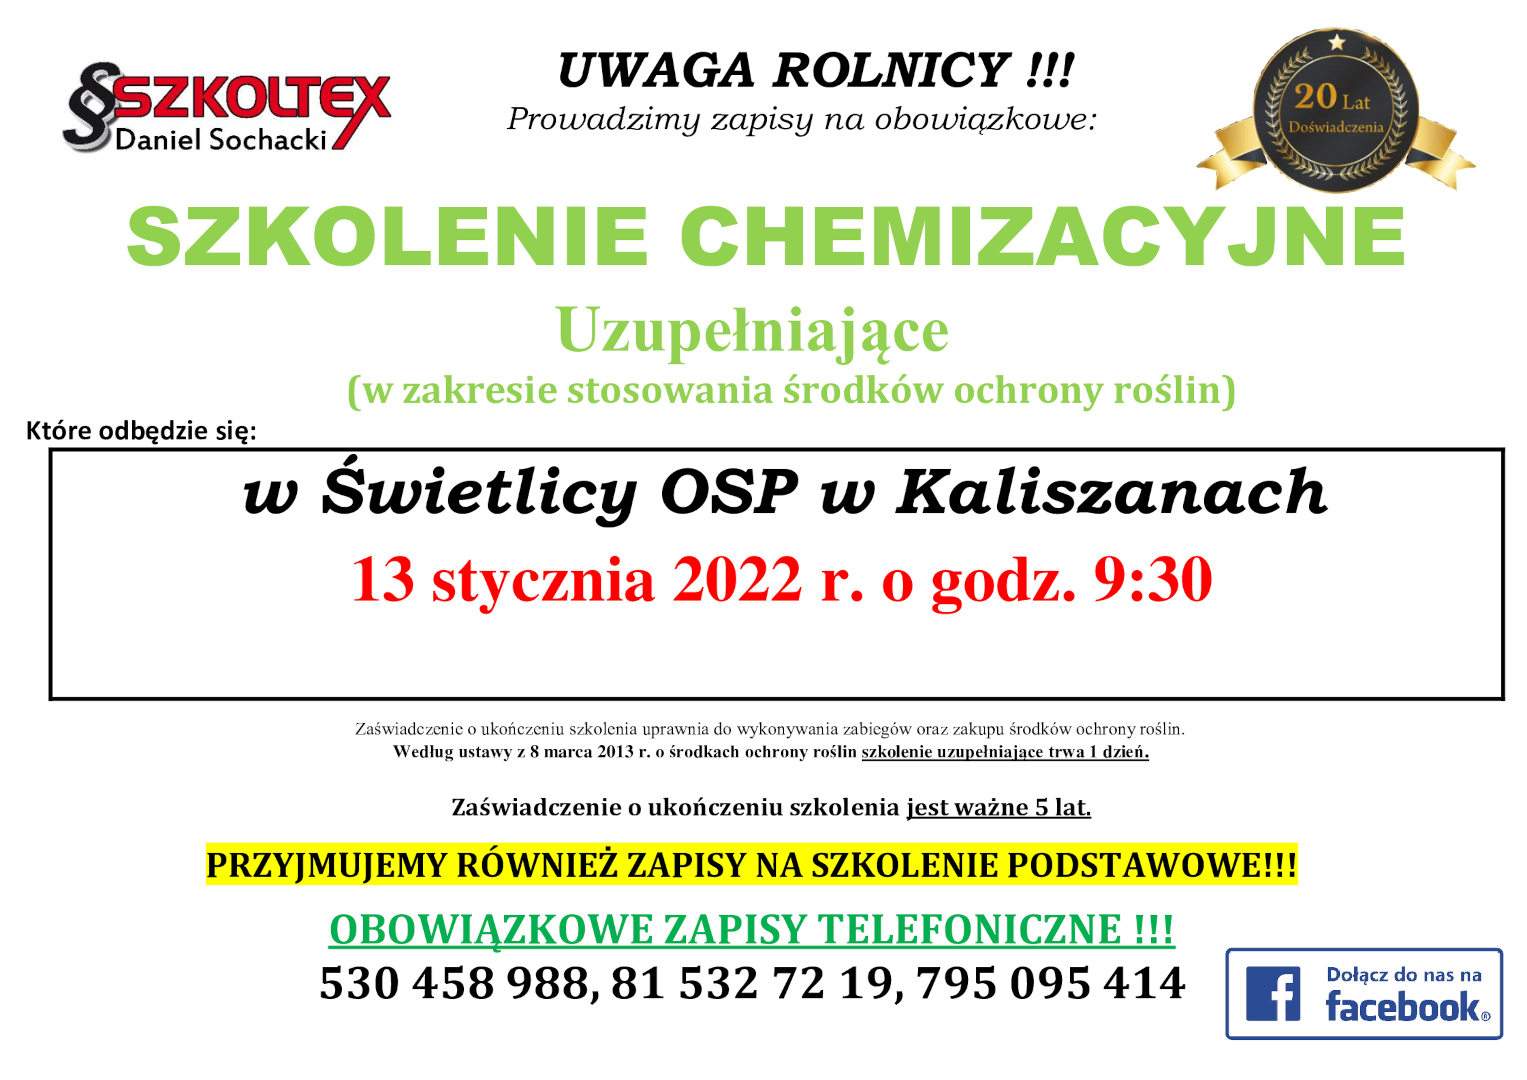 Plakat informacyjny o szkoleniu chemizacyjnym